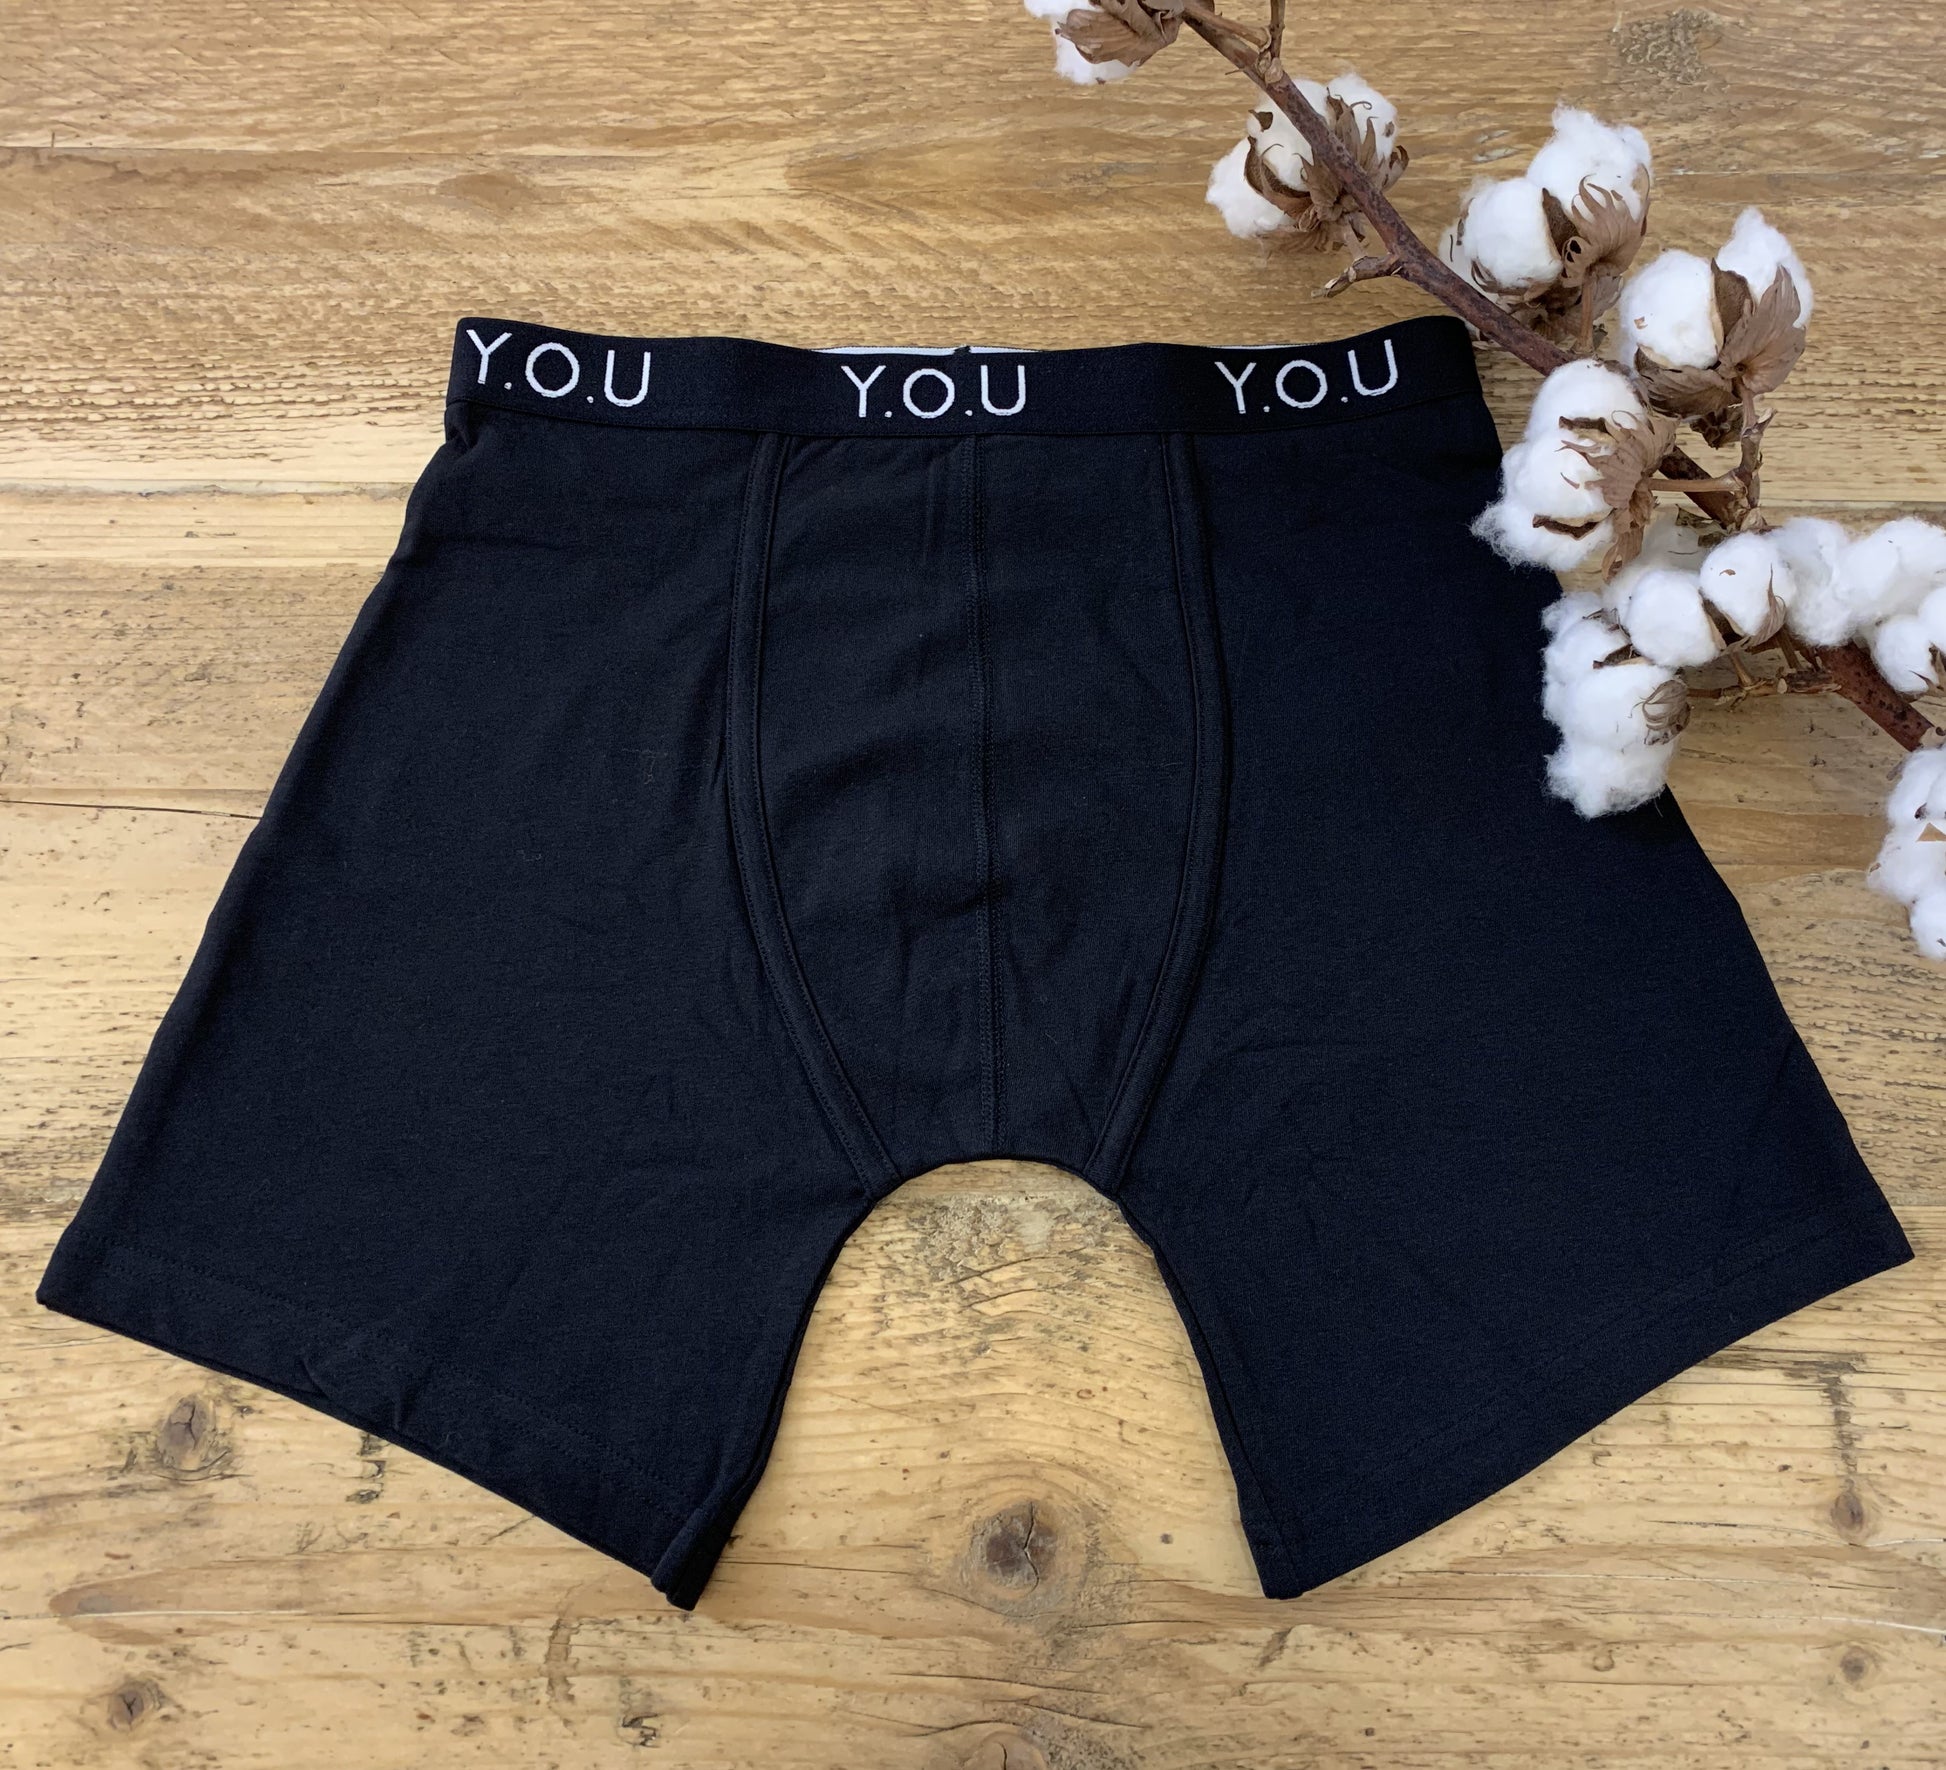 Men's organic cotton longer-leg trunks in black – Y.O.U underwear